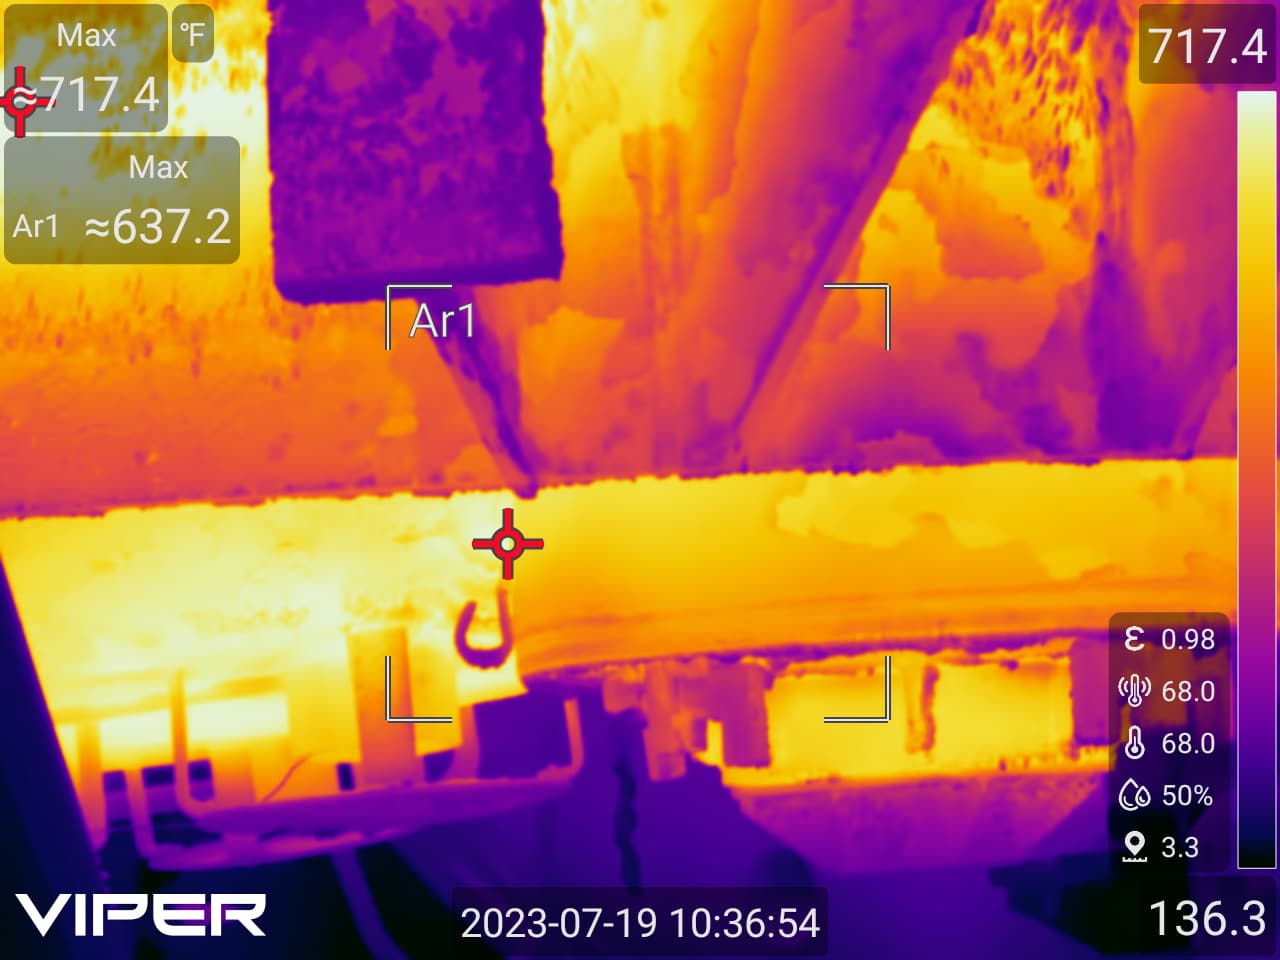 Viper PG384 for infrared inspection